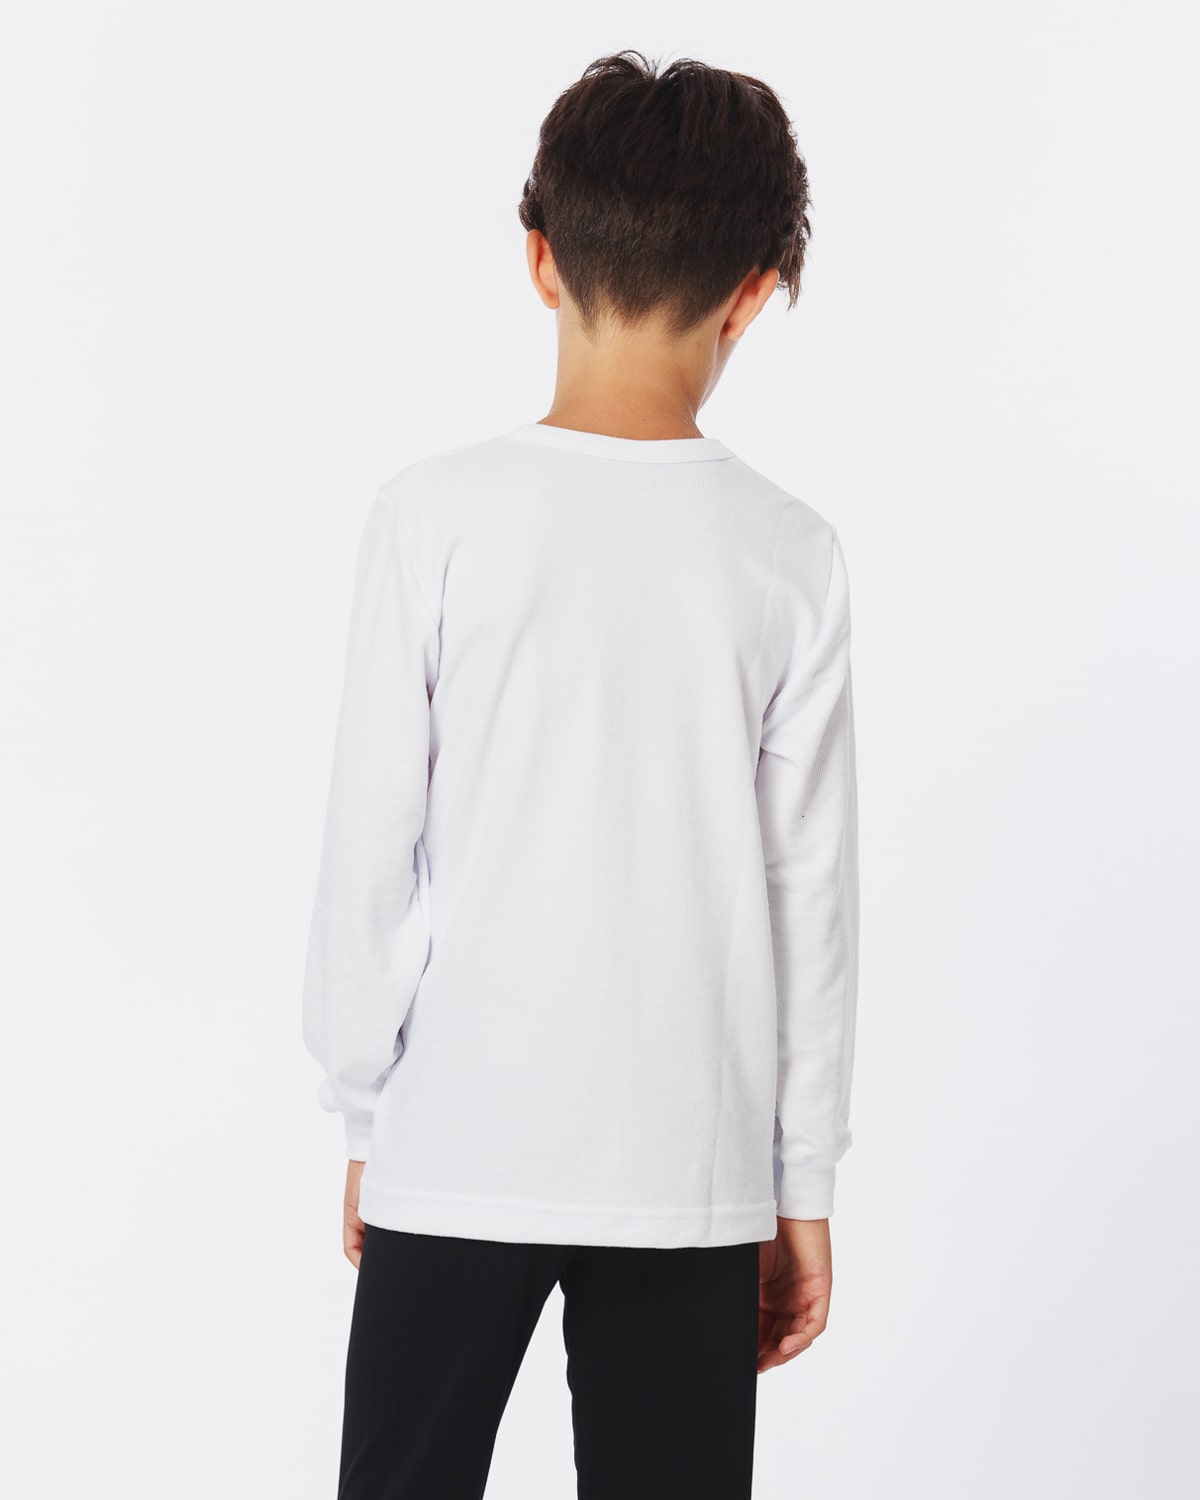 Camiseta Niño 189 – Eyelit Underwear